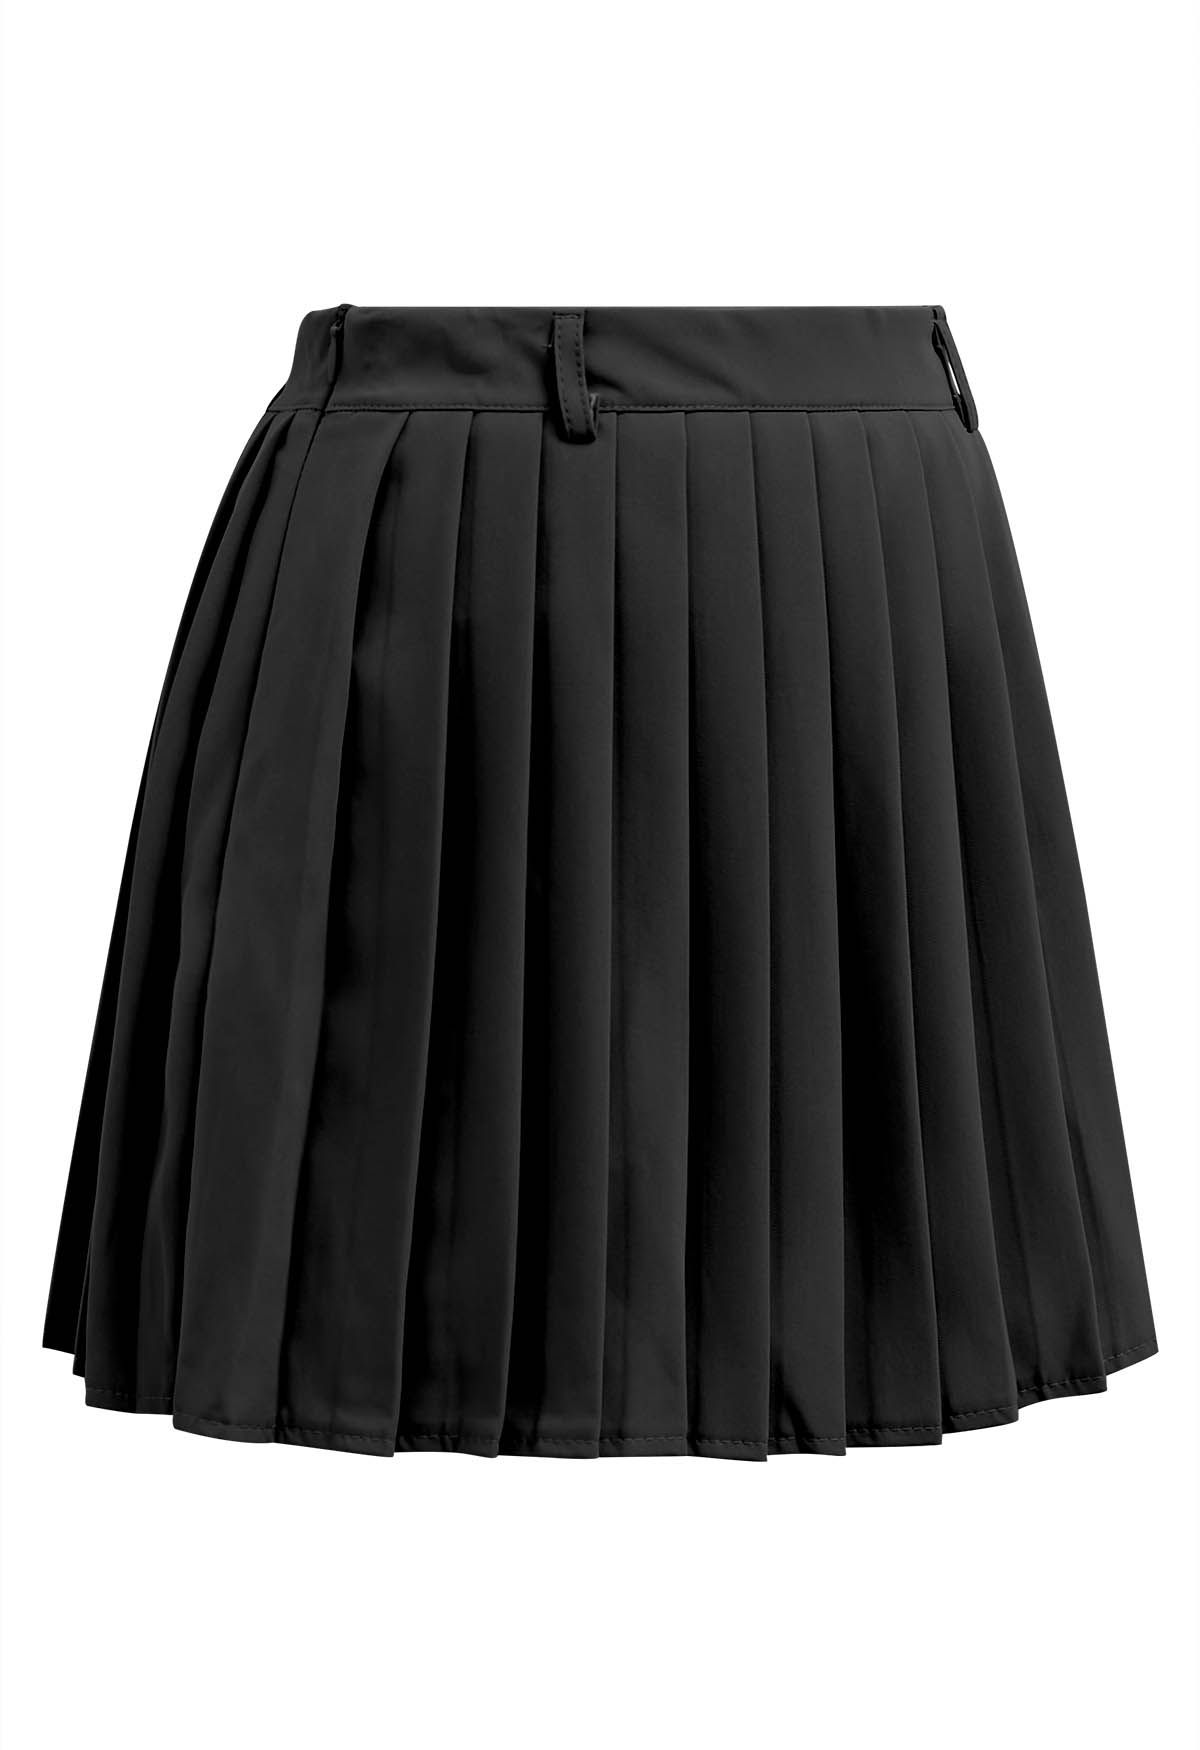 تنورة كلاسيكية صغيرة مطوي باللون الأسود